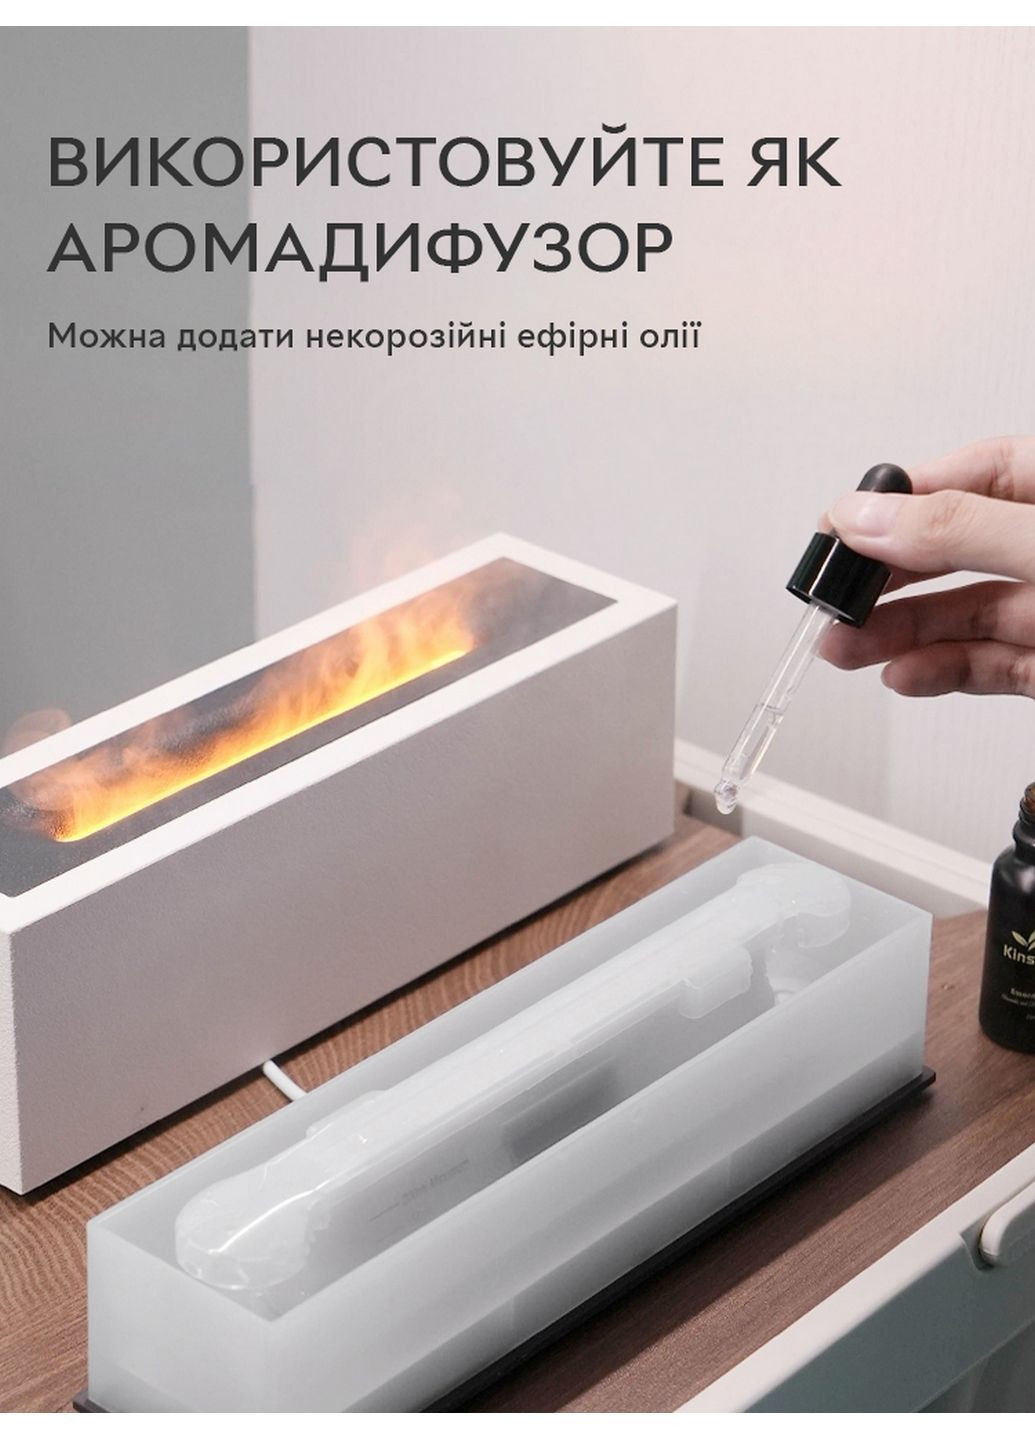 Зволожувач повітря портативний H3 Nordic Style Flame аромадифузор електричний, ефект полум'я, ПОДАРУНОК + 2 Арома олії Kinscoter (293480835)